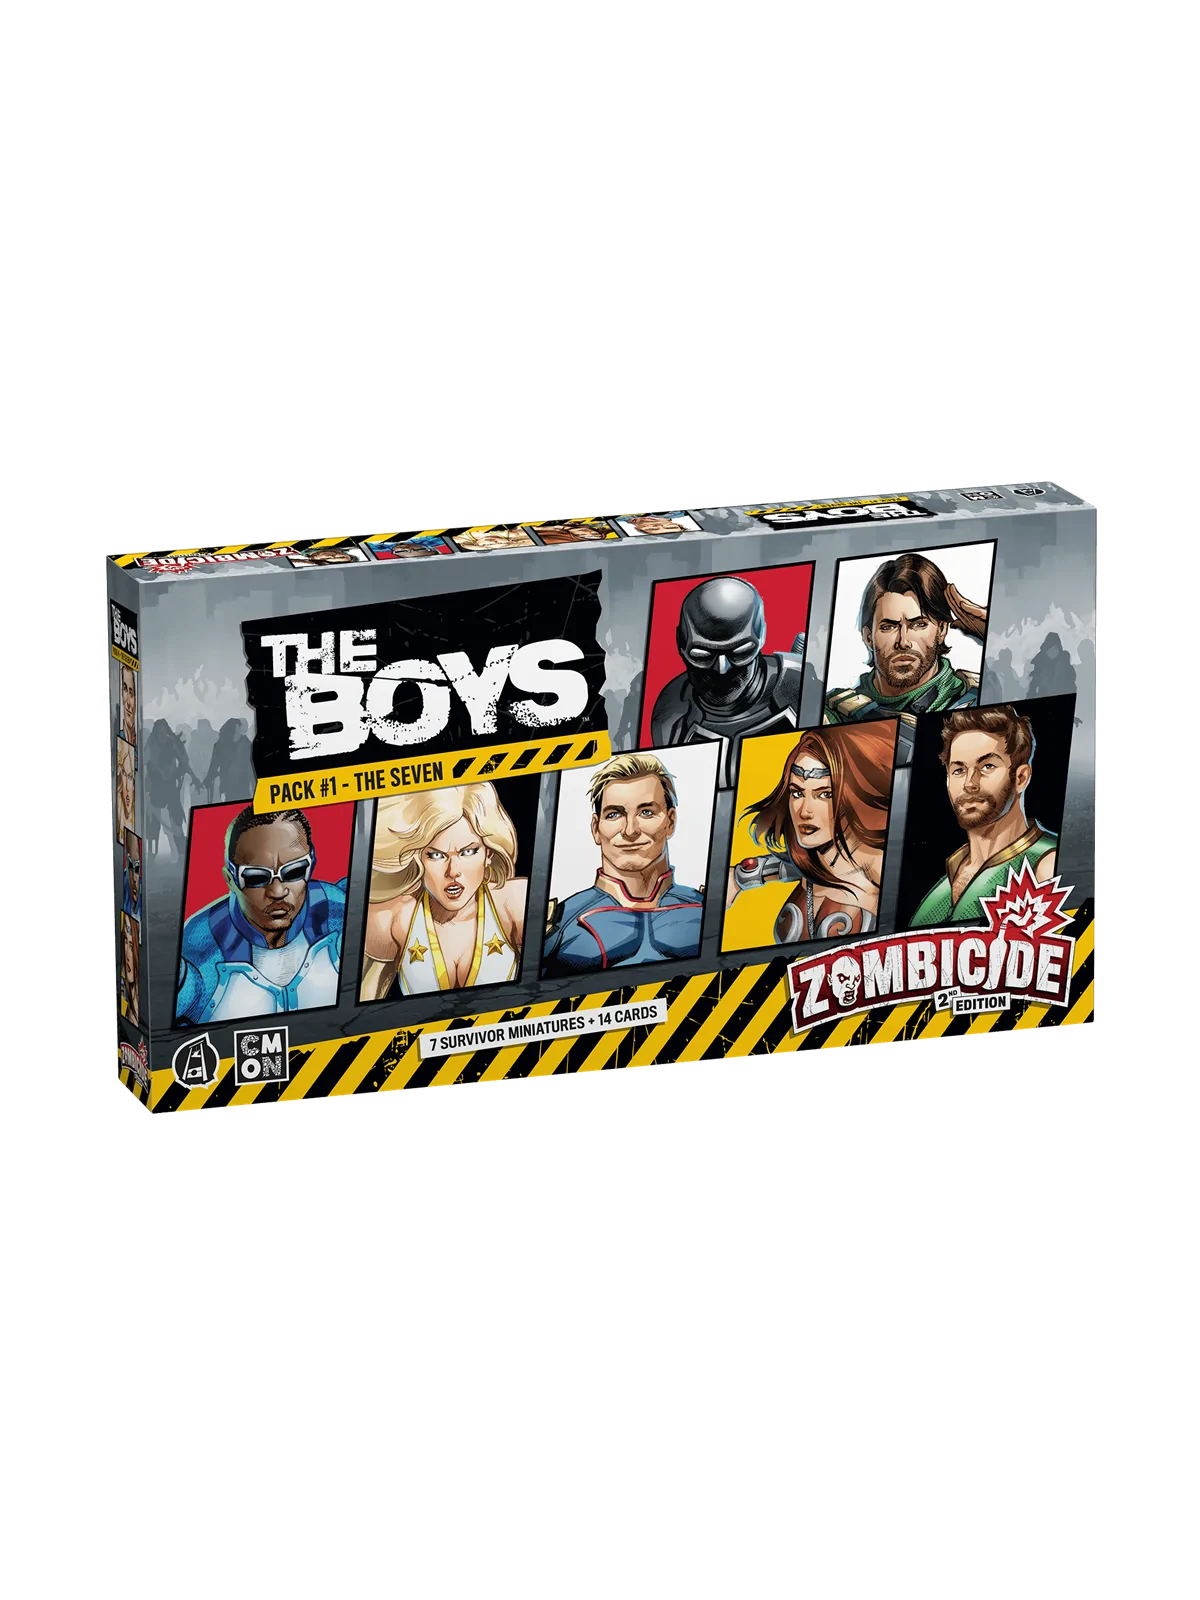 Comprar Zombicide Segunda Edicion: The Boys Pack 1- The Seven barato a